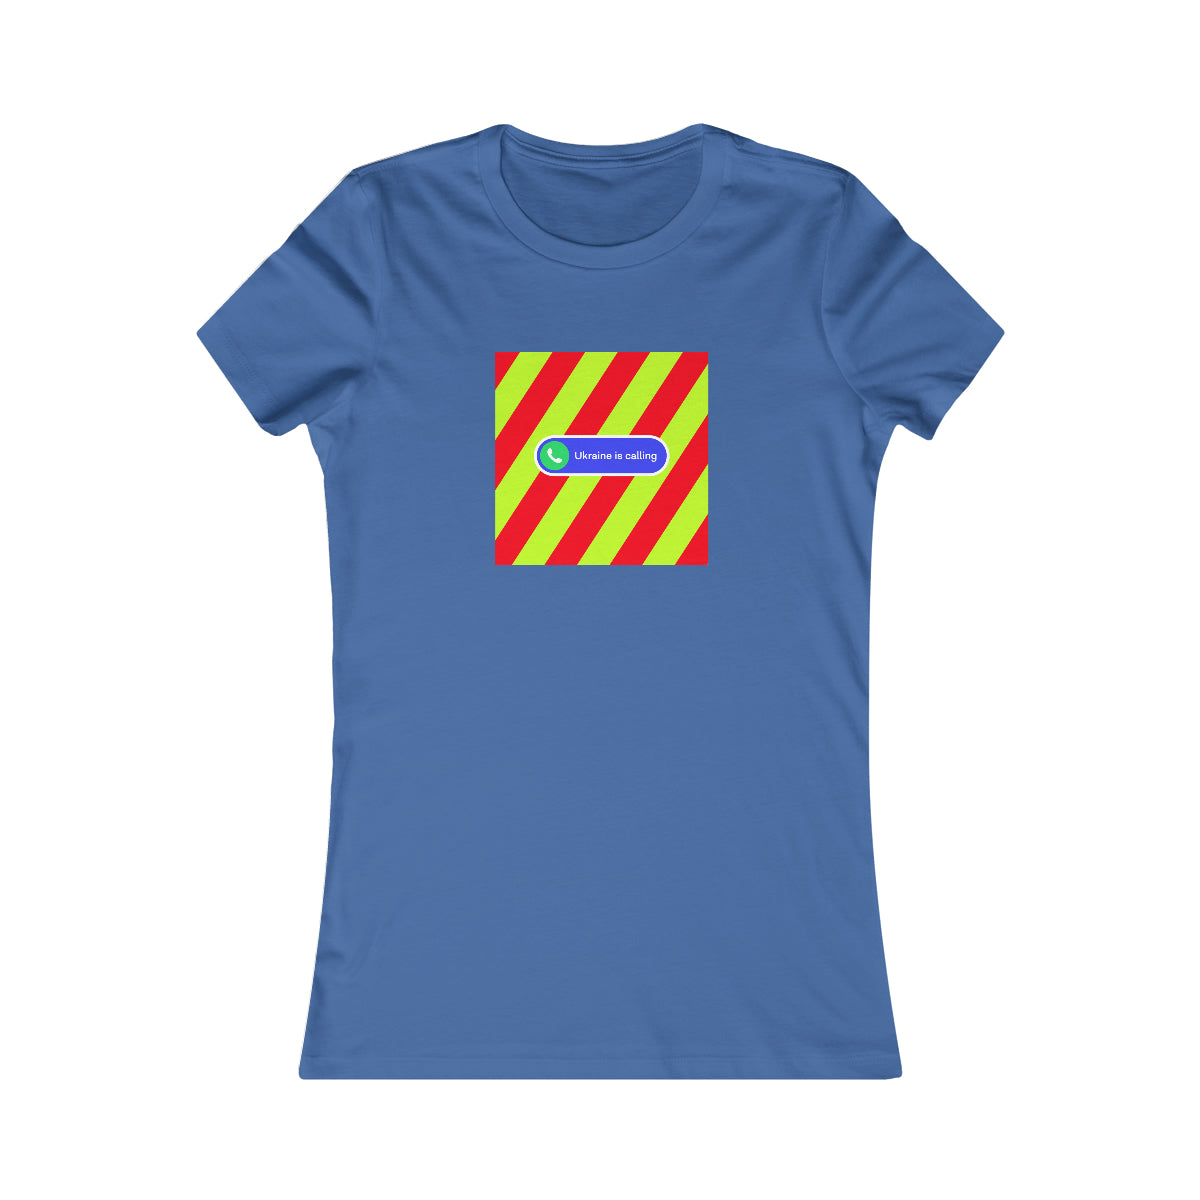 Gespendet an die Ukraine – Lieblings-T-Shirt für Frauen